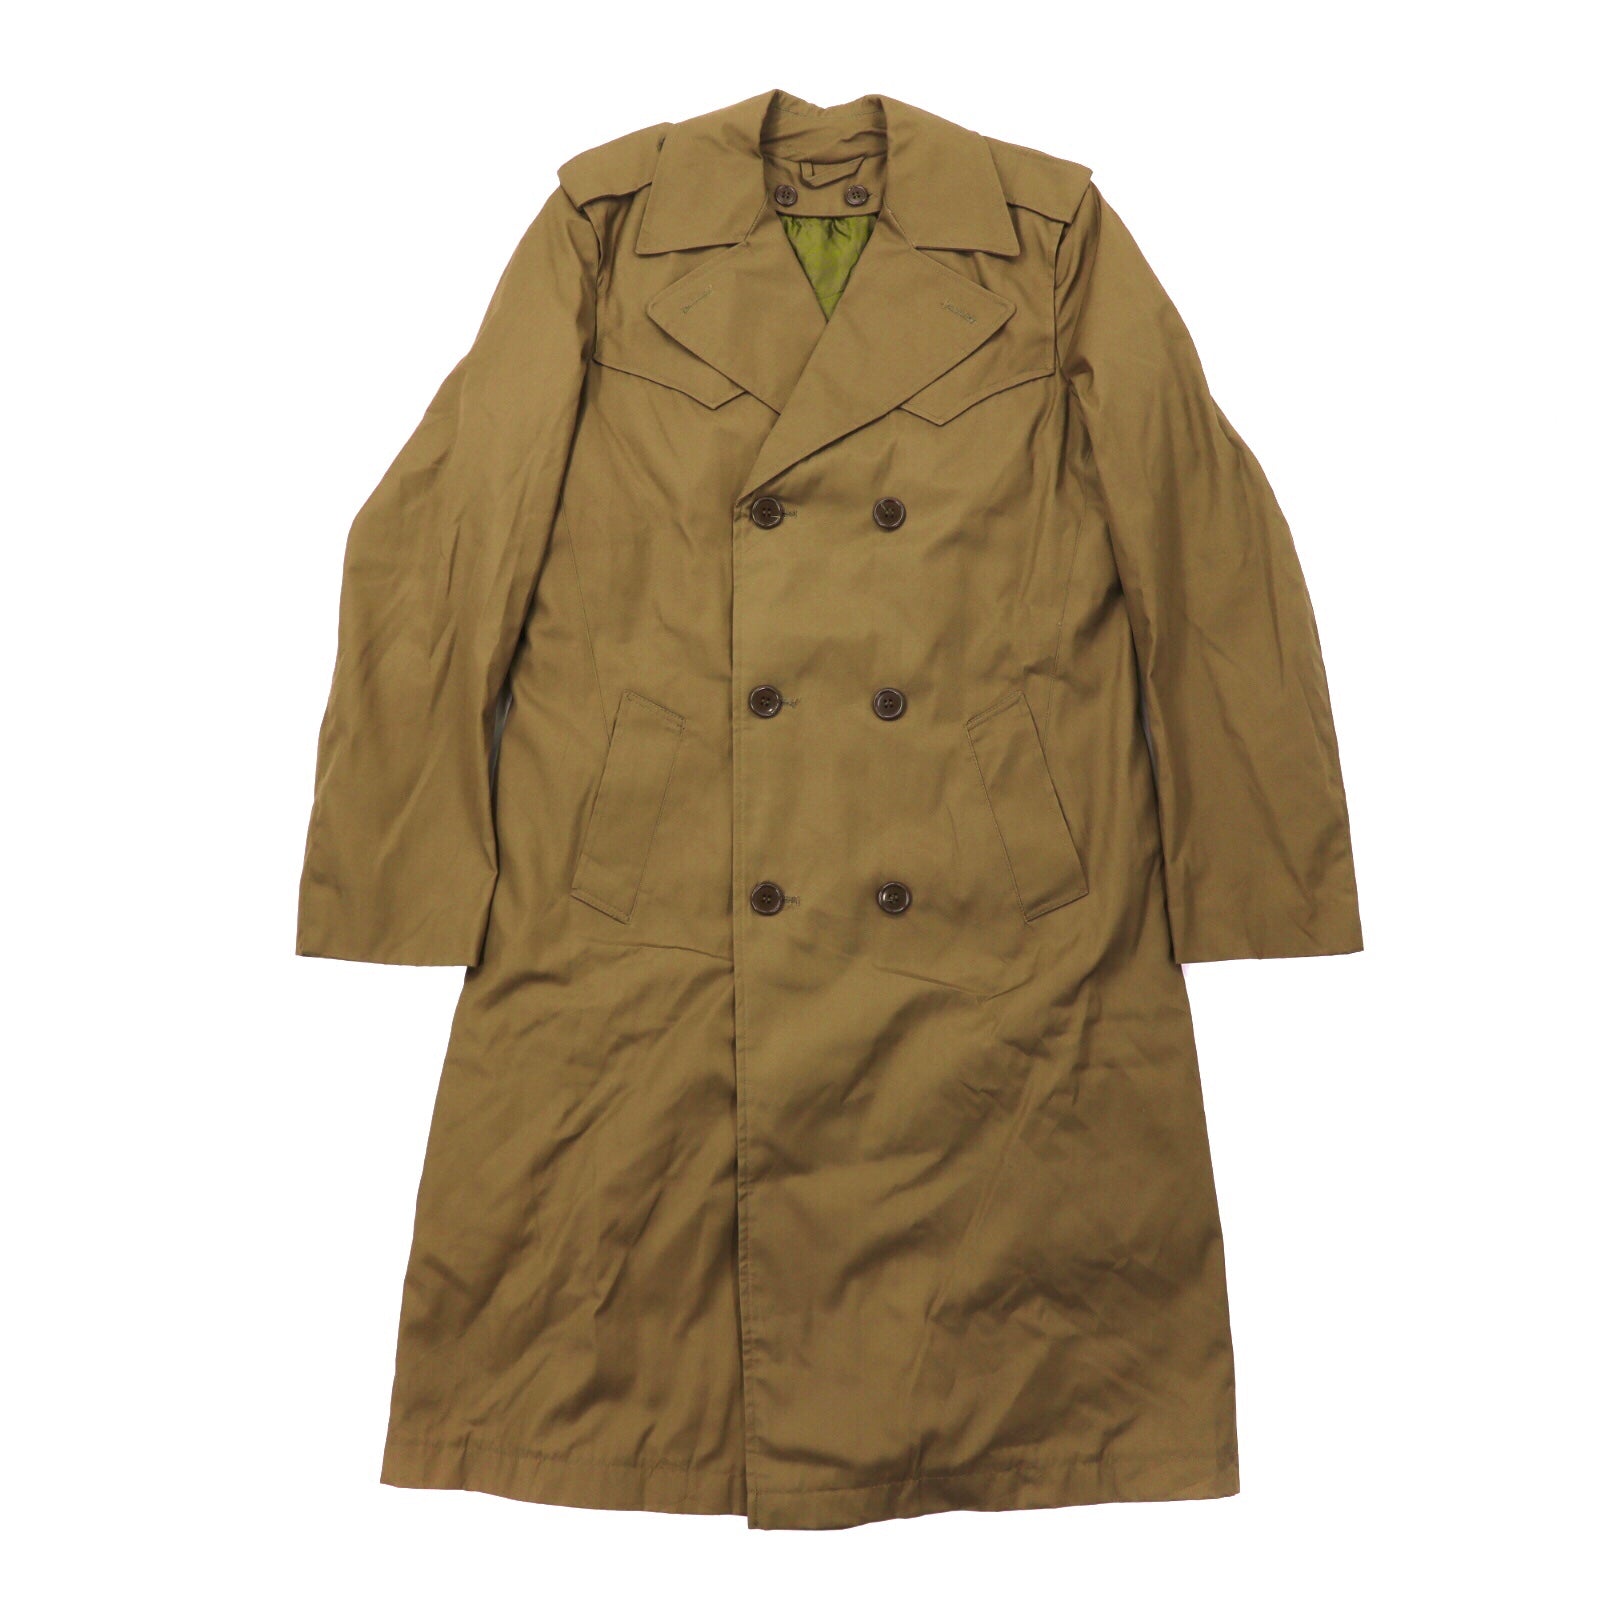 E. I. Trench coat 44 Khaki Far Liner Made in Italy 80's – 日本然リトテ